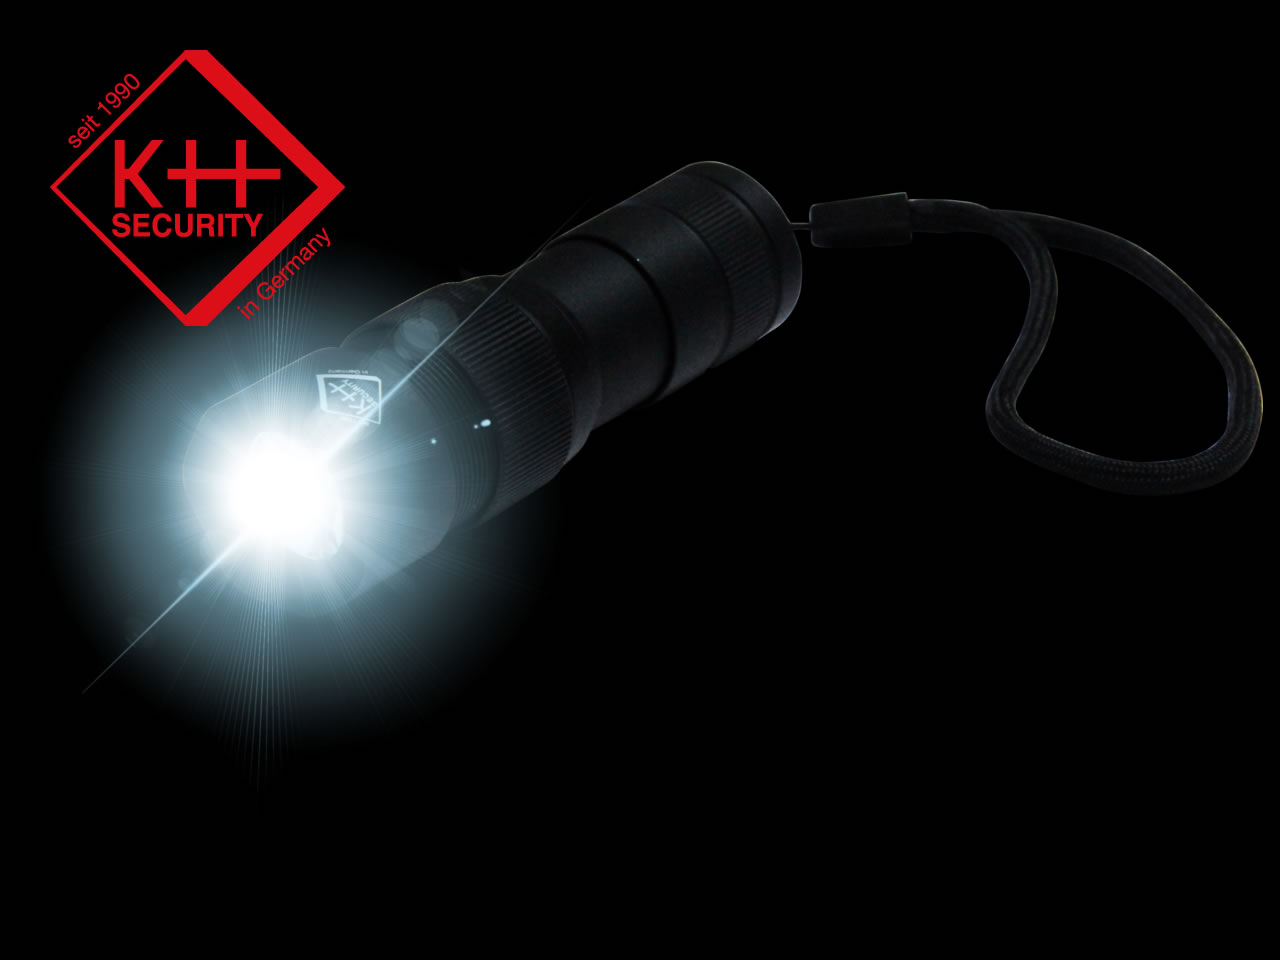 KH SECURITY LED Taschenlampe 300 lm UND Alarmgerät 120 dB PRO ALARM, nur 10 cm, 99 g